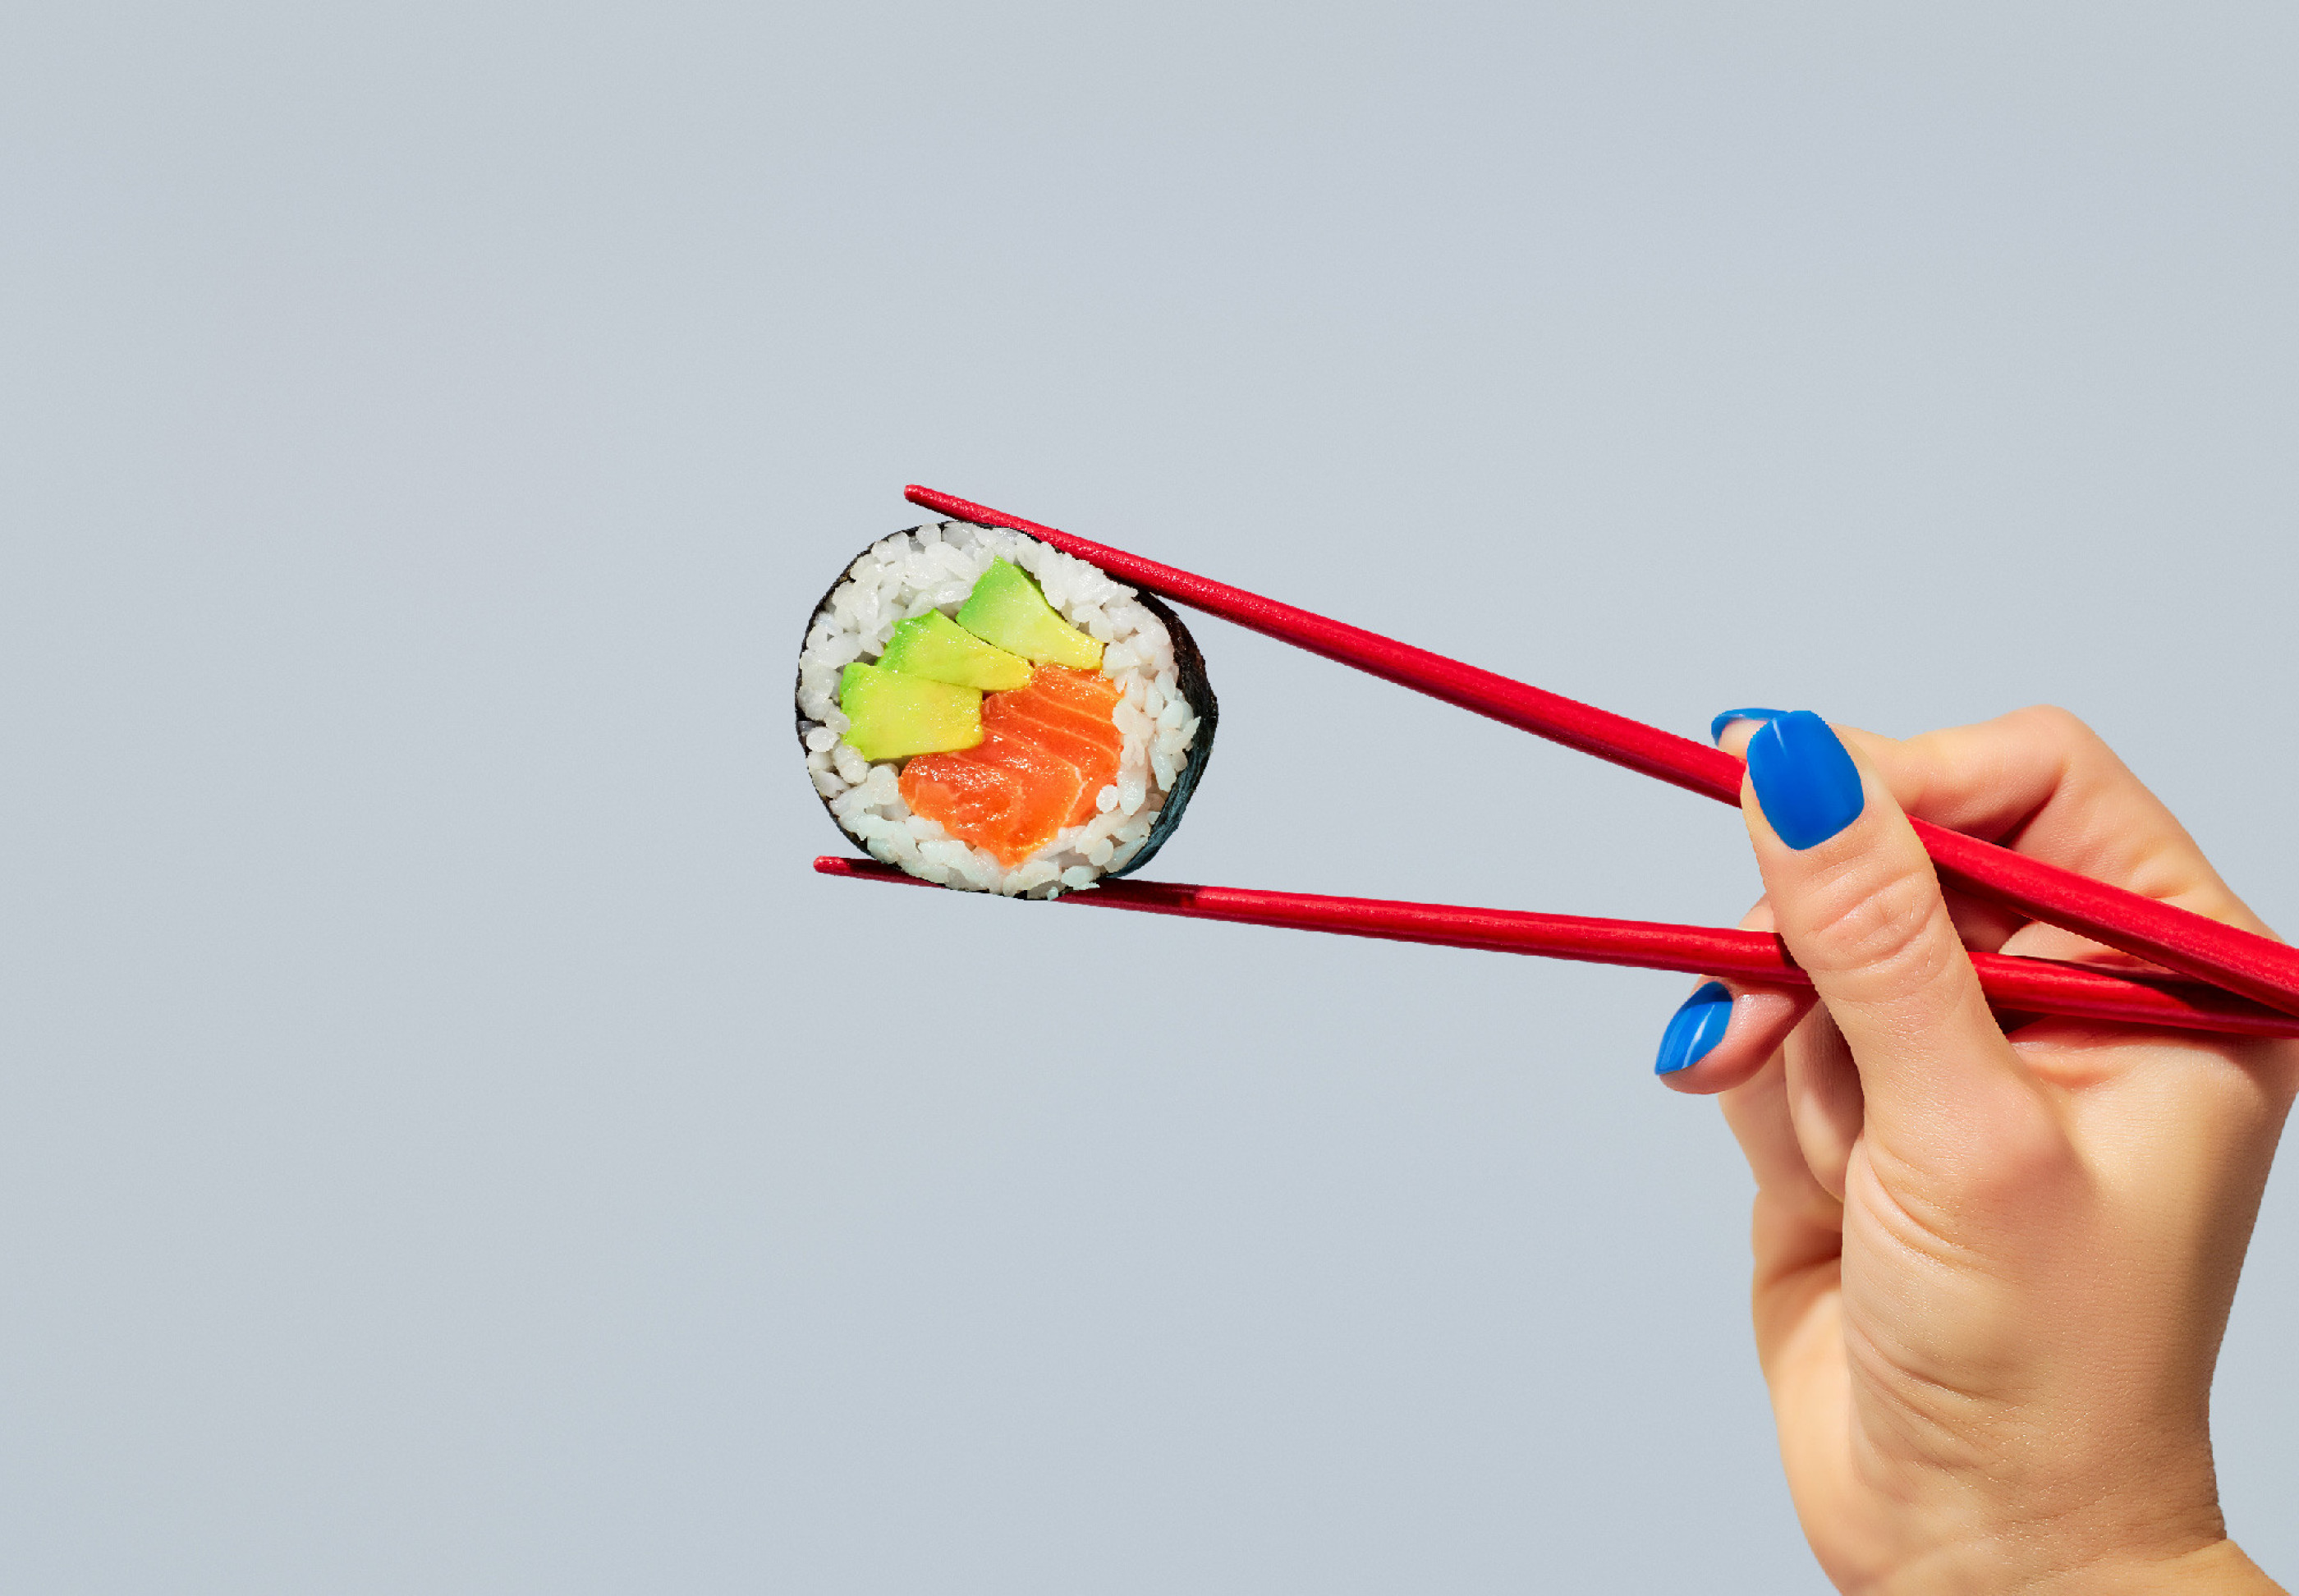 Holding sushi